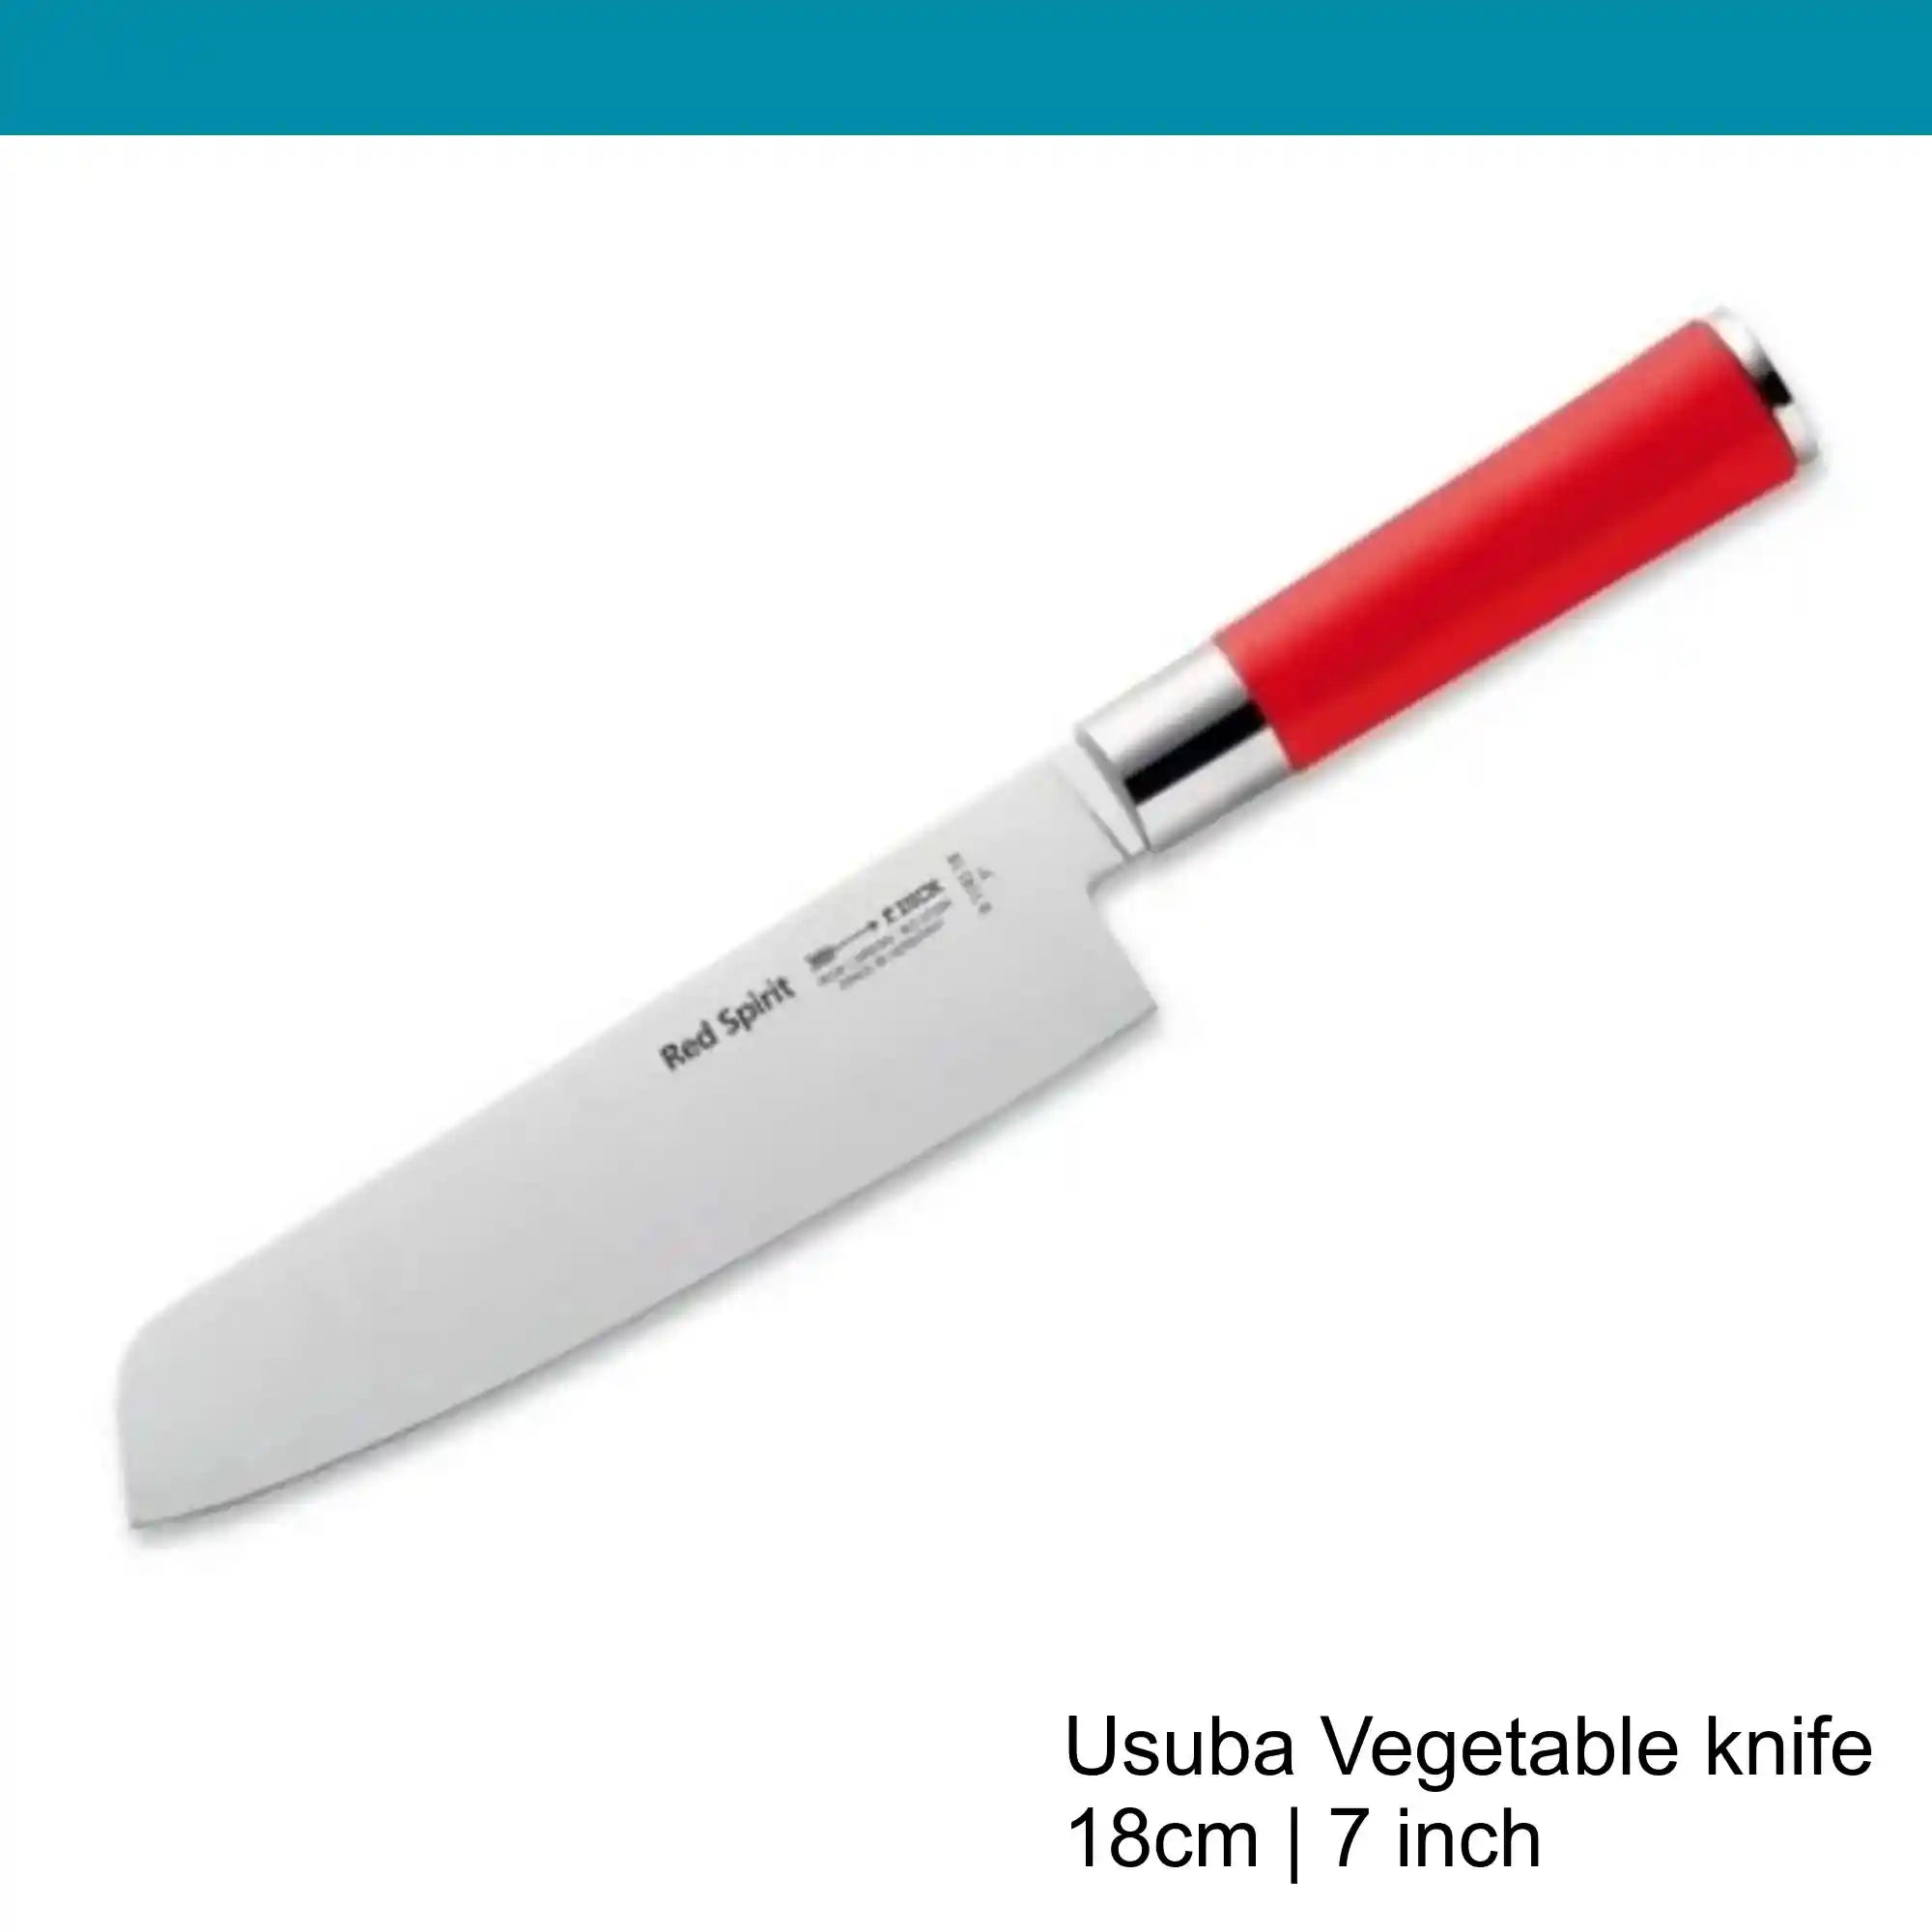 F.Dick Red Spirit Usuba Vegetable Knife, 18 cm